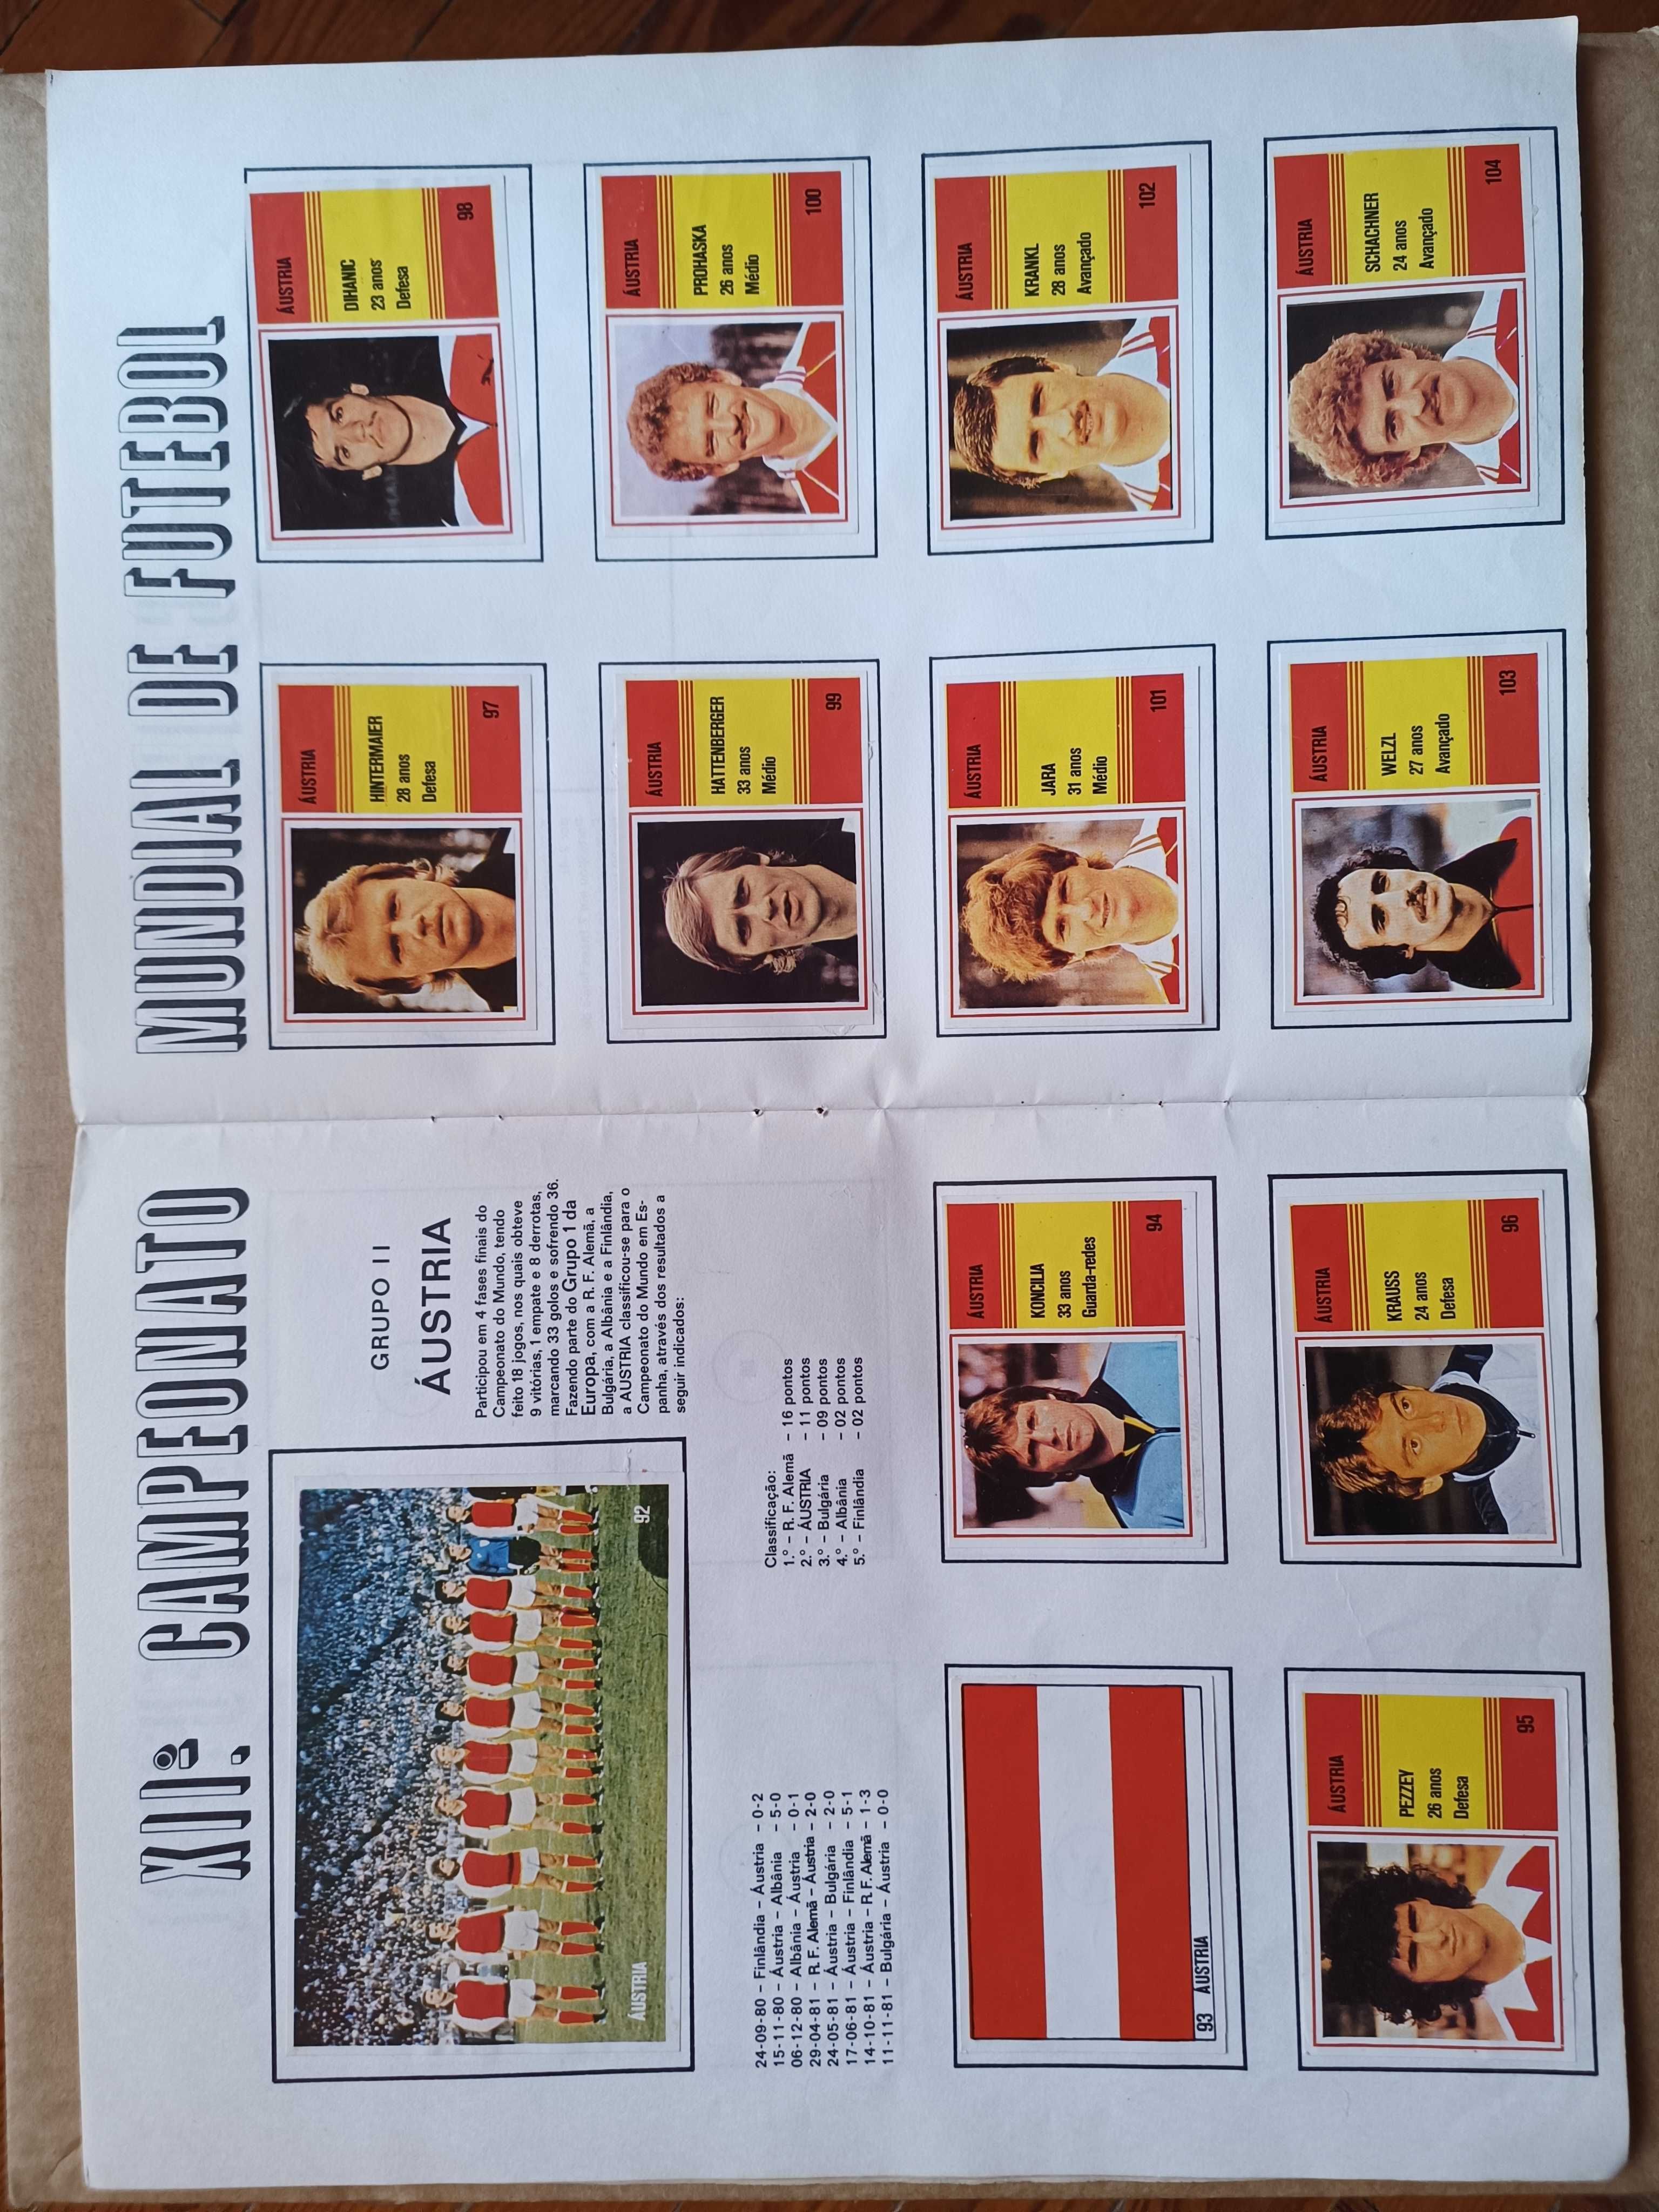 Caderneta campeonato do mundo Espanha 1982